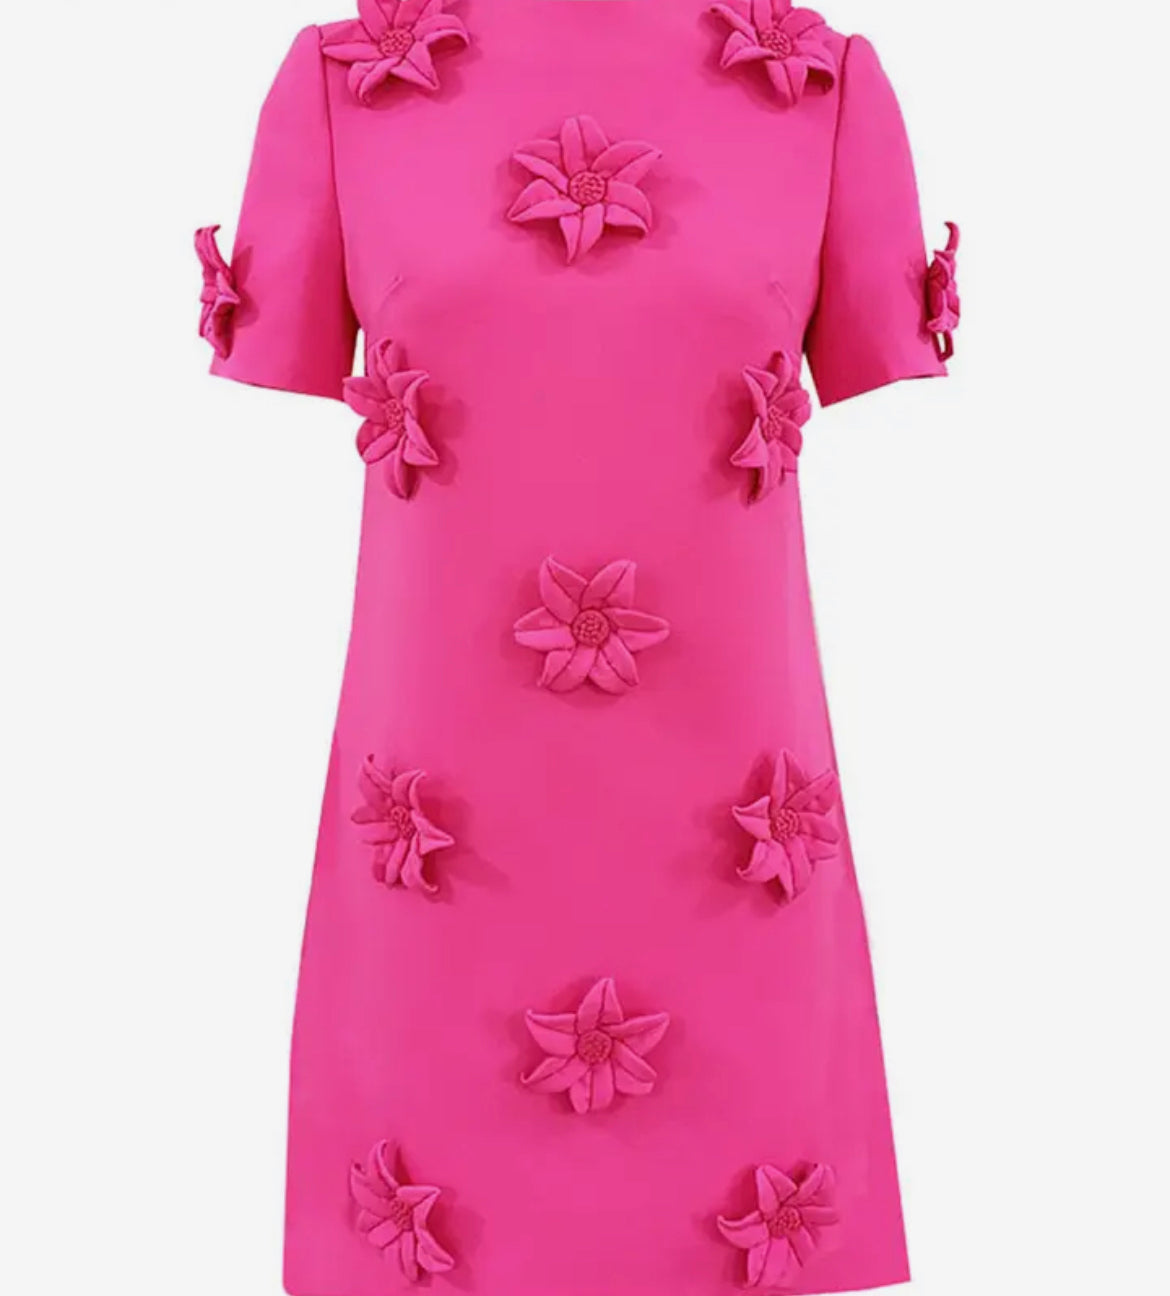 Solid Pullover Pink Floral Elegant Dress